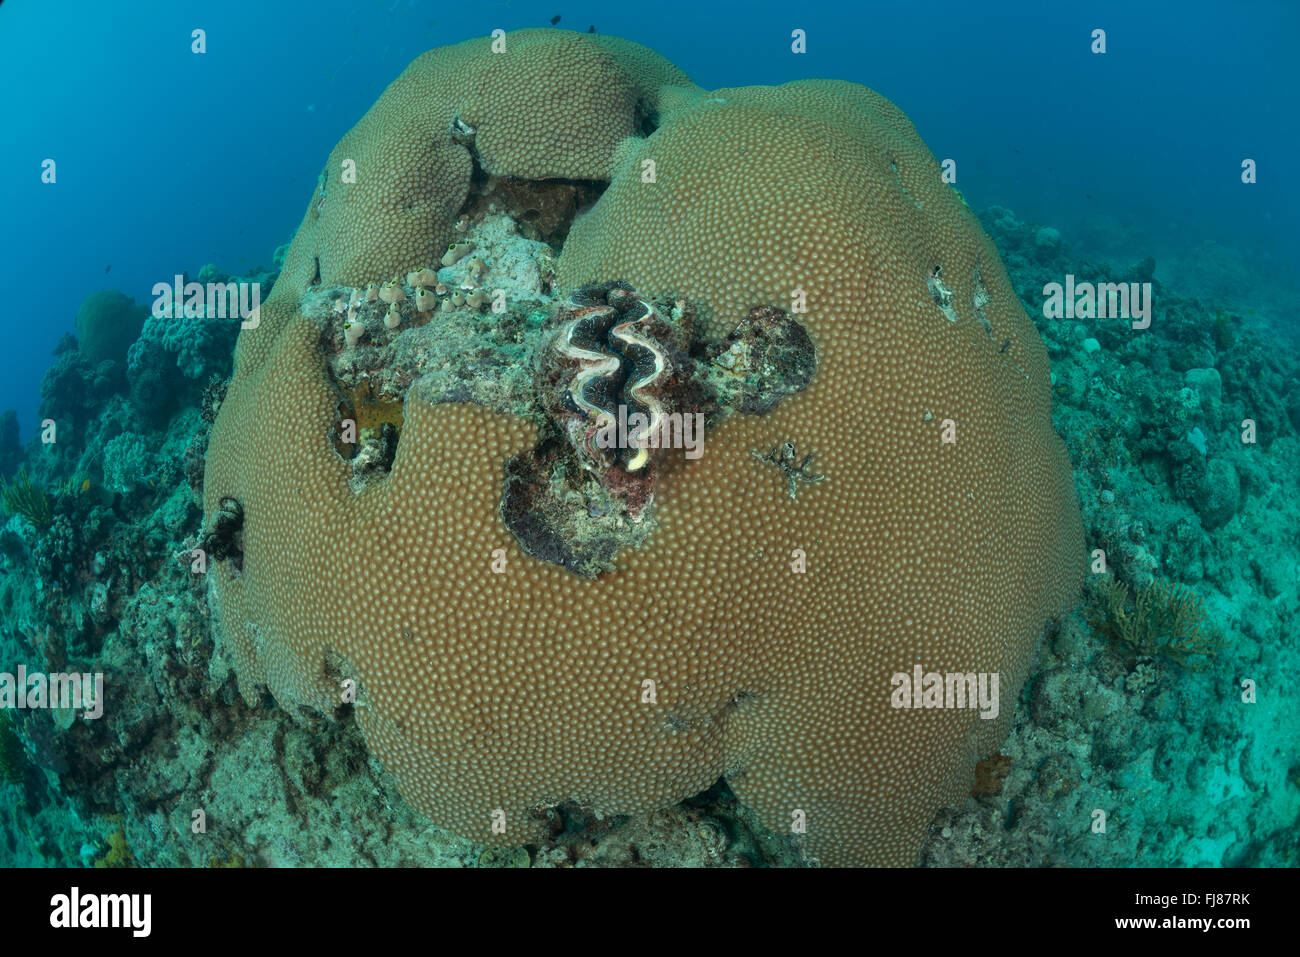 Pocos luchando sanos corales masivos (Diploastra sp.) tratando de permanecer vivo rodeado por corales cubiertos de algas. Esta triste de la Gran Barrera de Arrecife posiblemente está devastada por la corona de espinas brote o los daños de un ciclón. Foto de stock